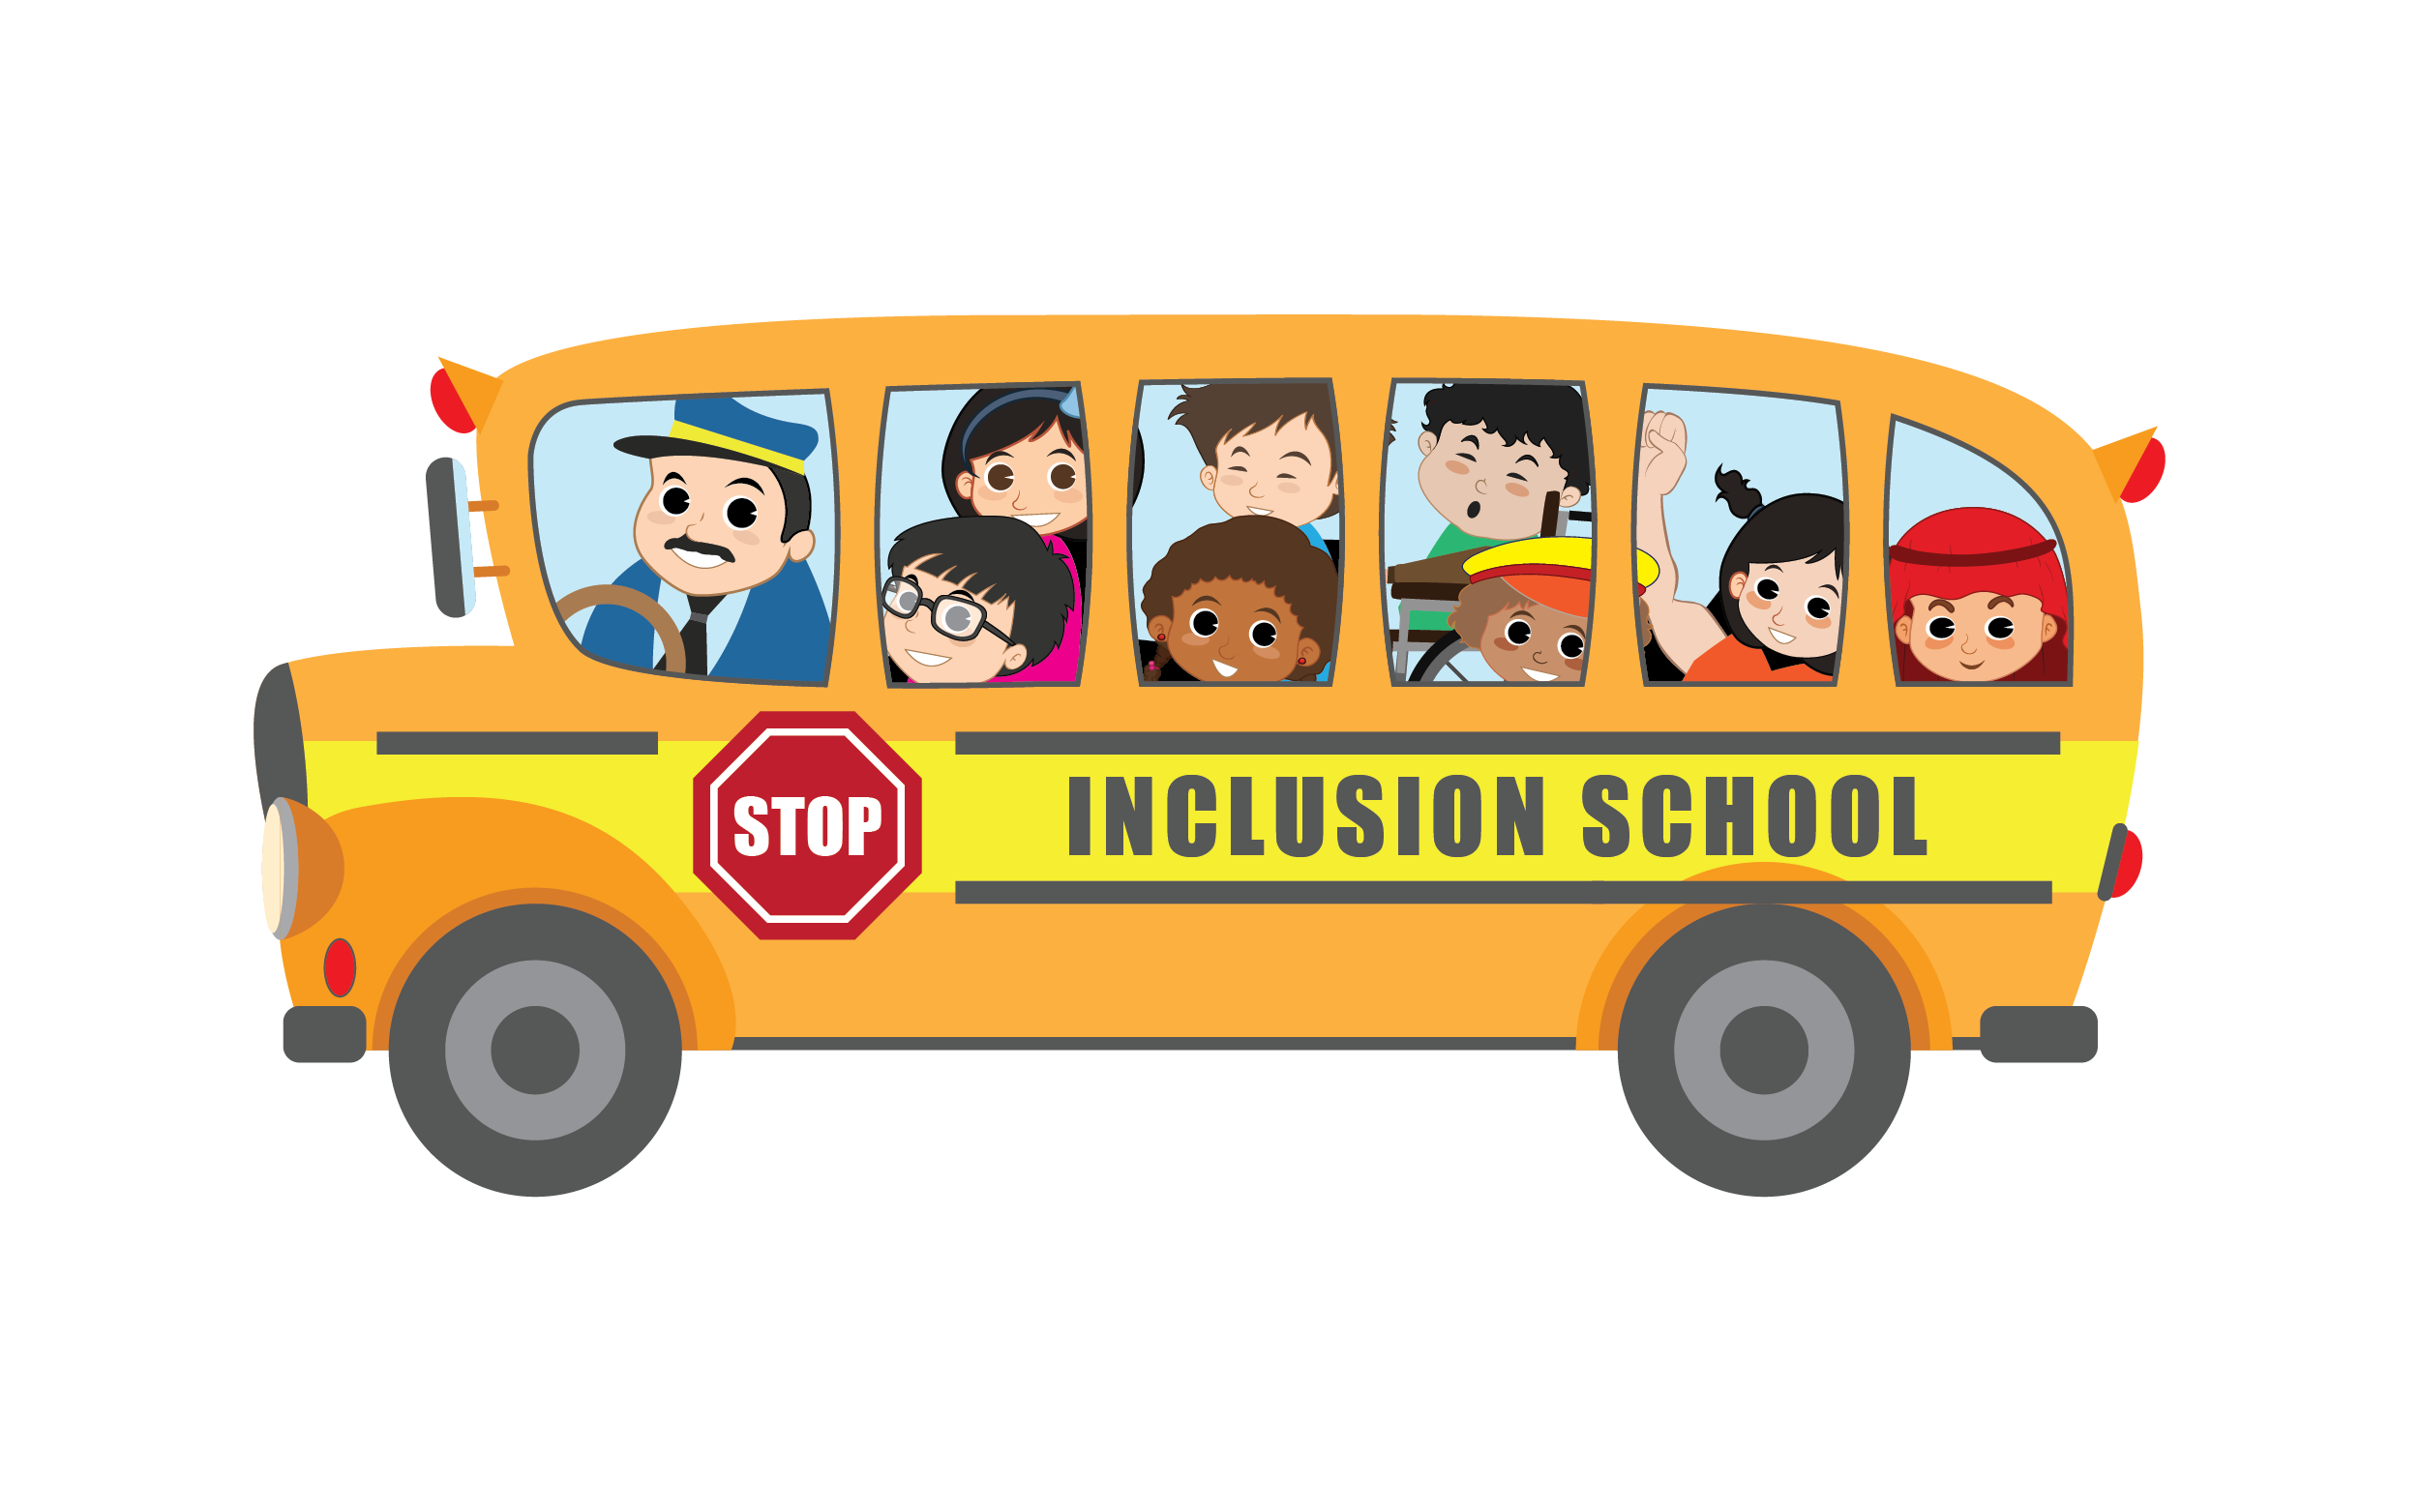 Inclusion School